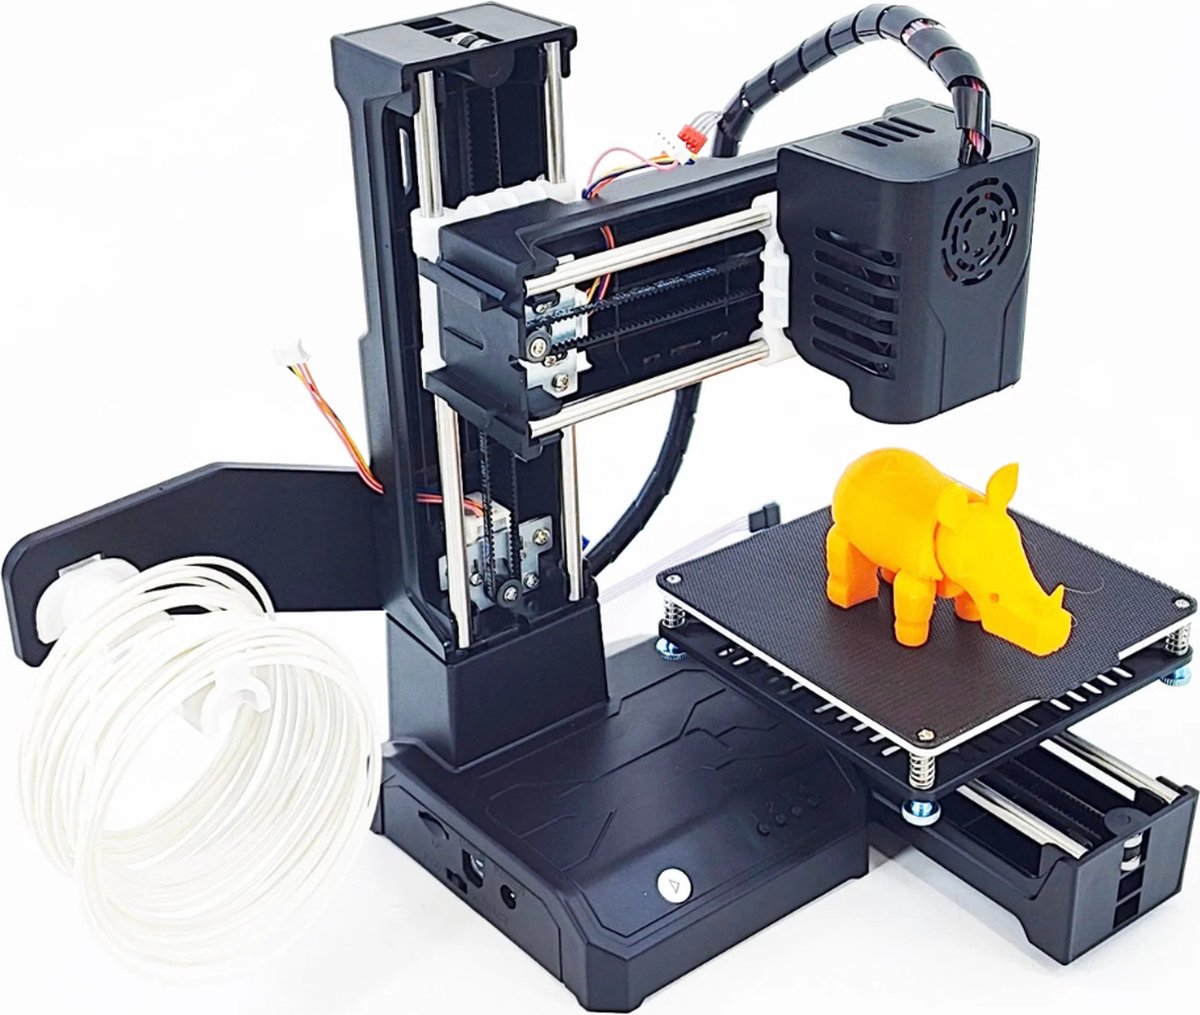 P&P Goods® 3D Printer Voor Beginners - 3D Printer - Starterspakket - Bouwpakket - Kinderen & Volwassenen - Gebruiksvriendelijk